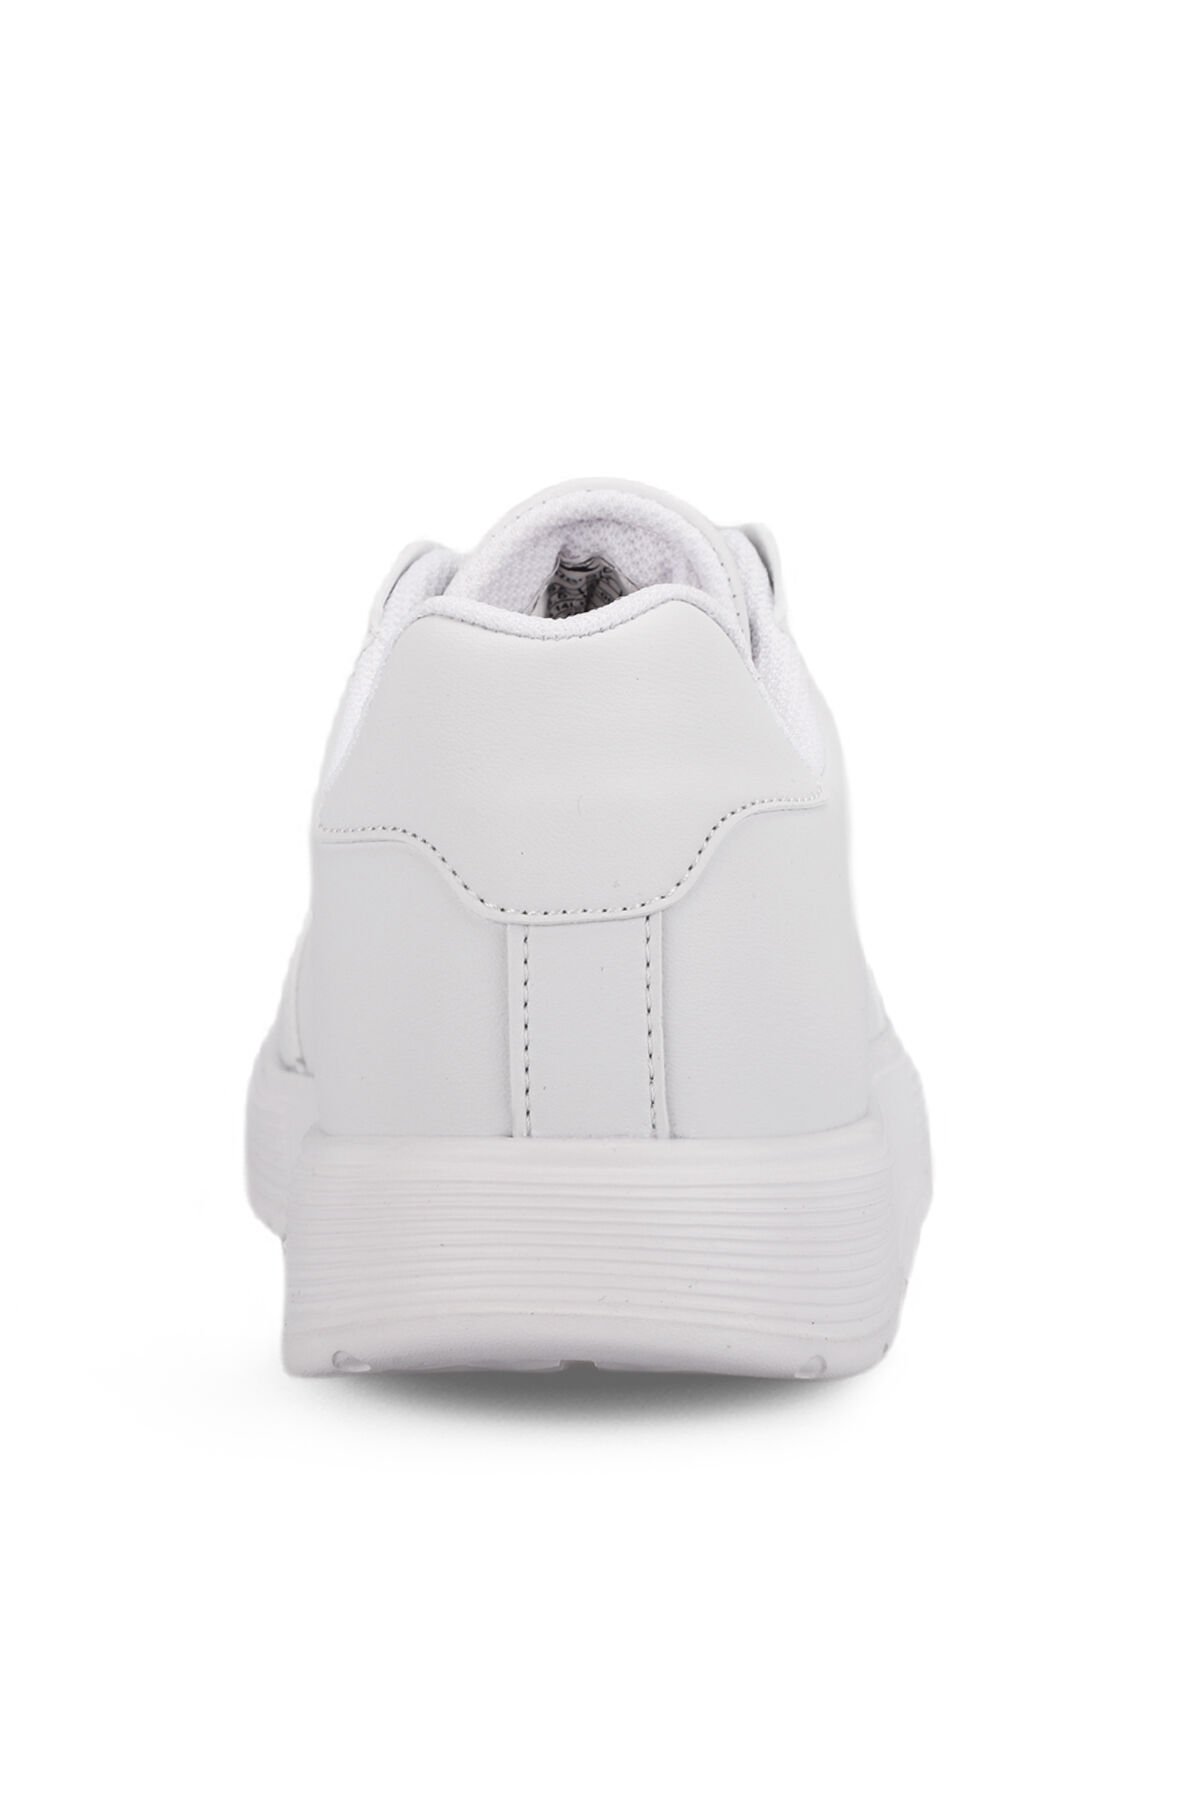 ZEKKO Sneaker Kadın Ayakkabı Beyaz - Thumbnail